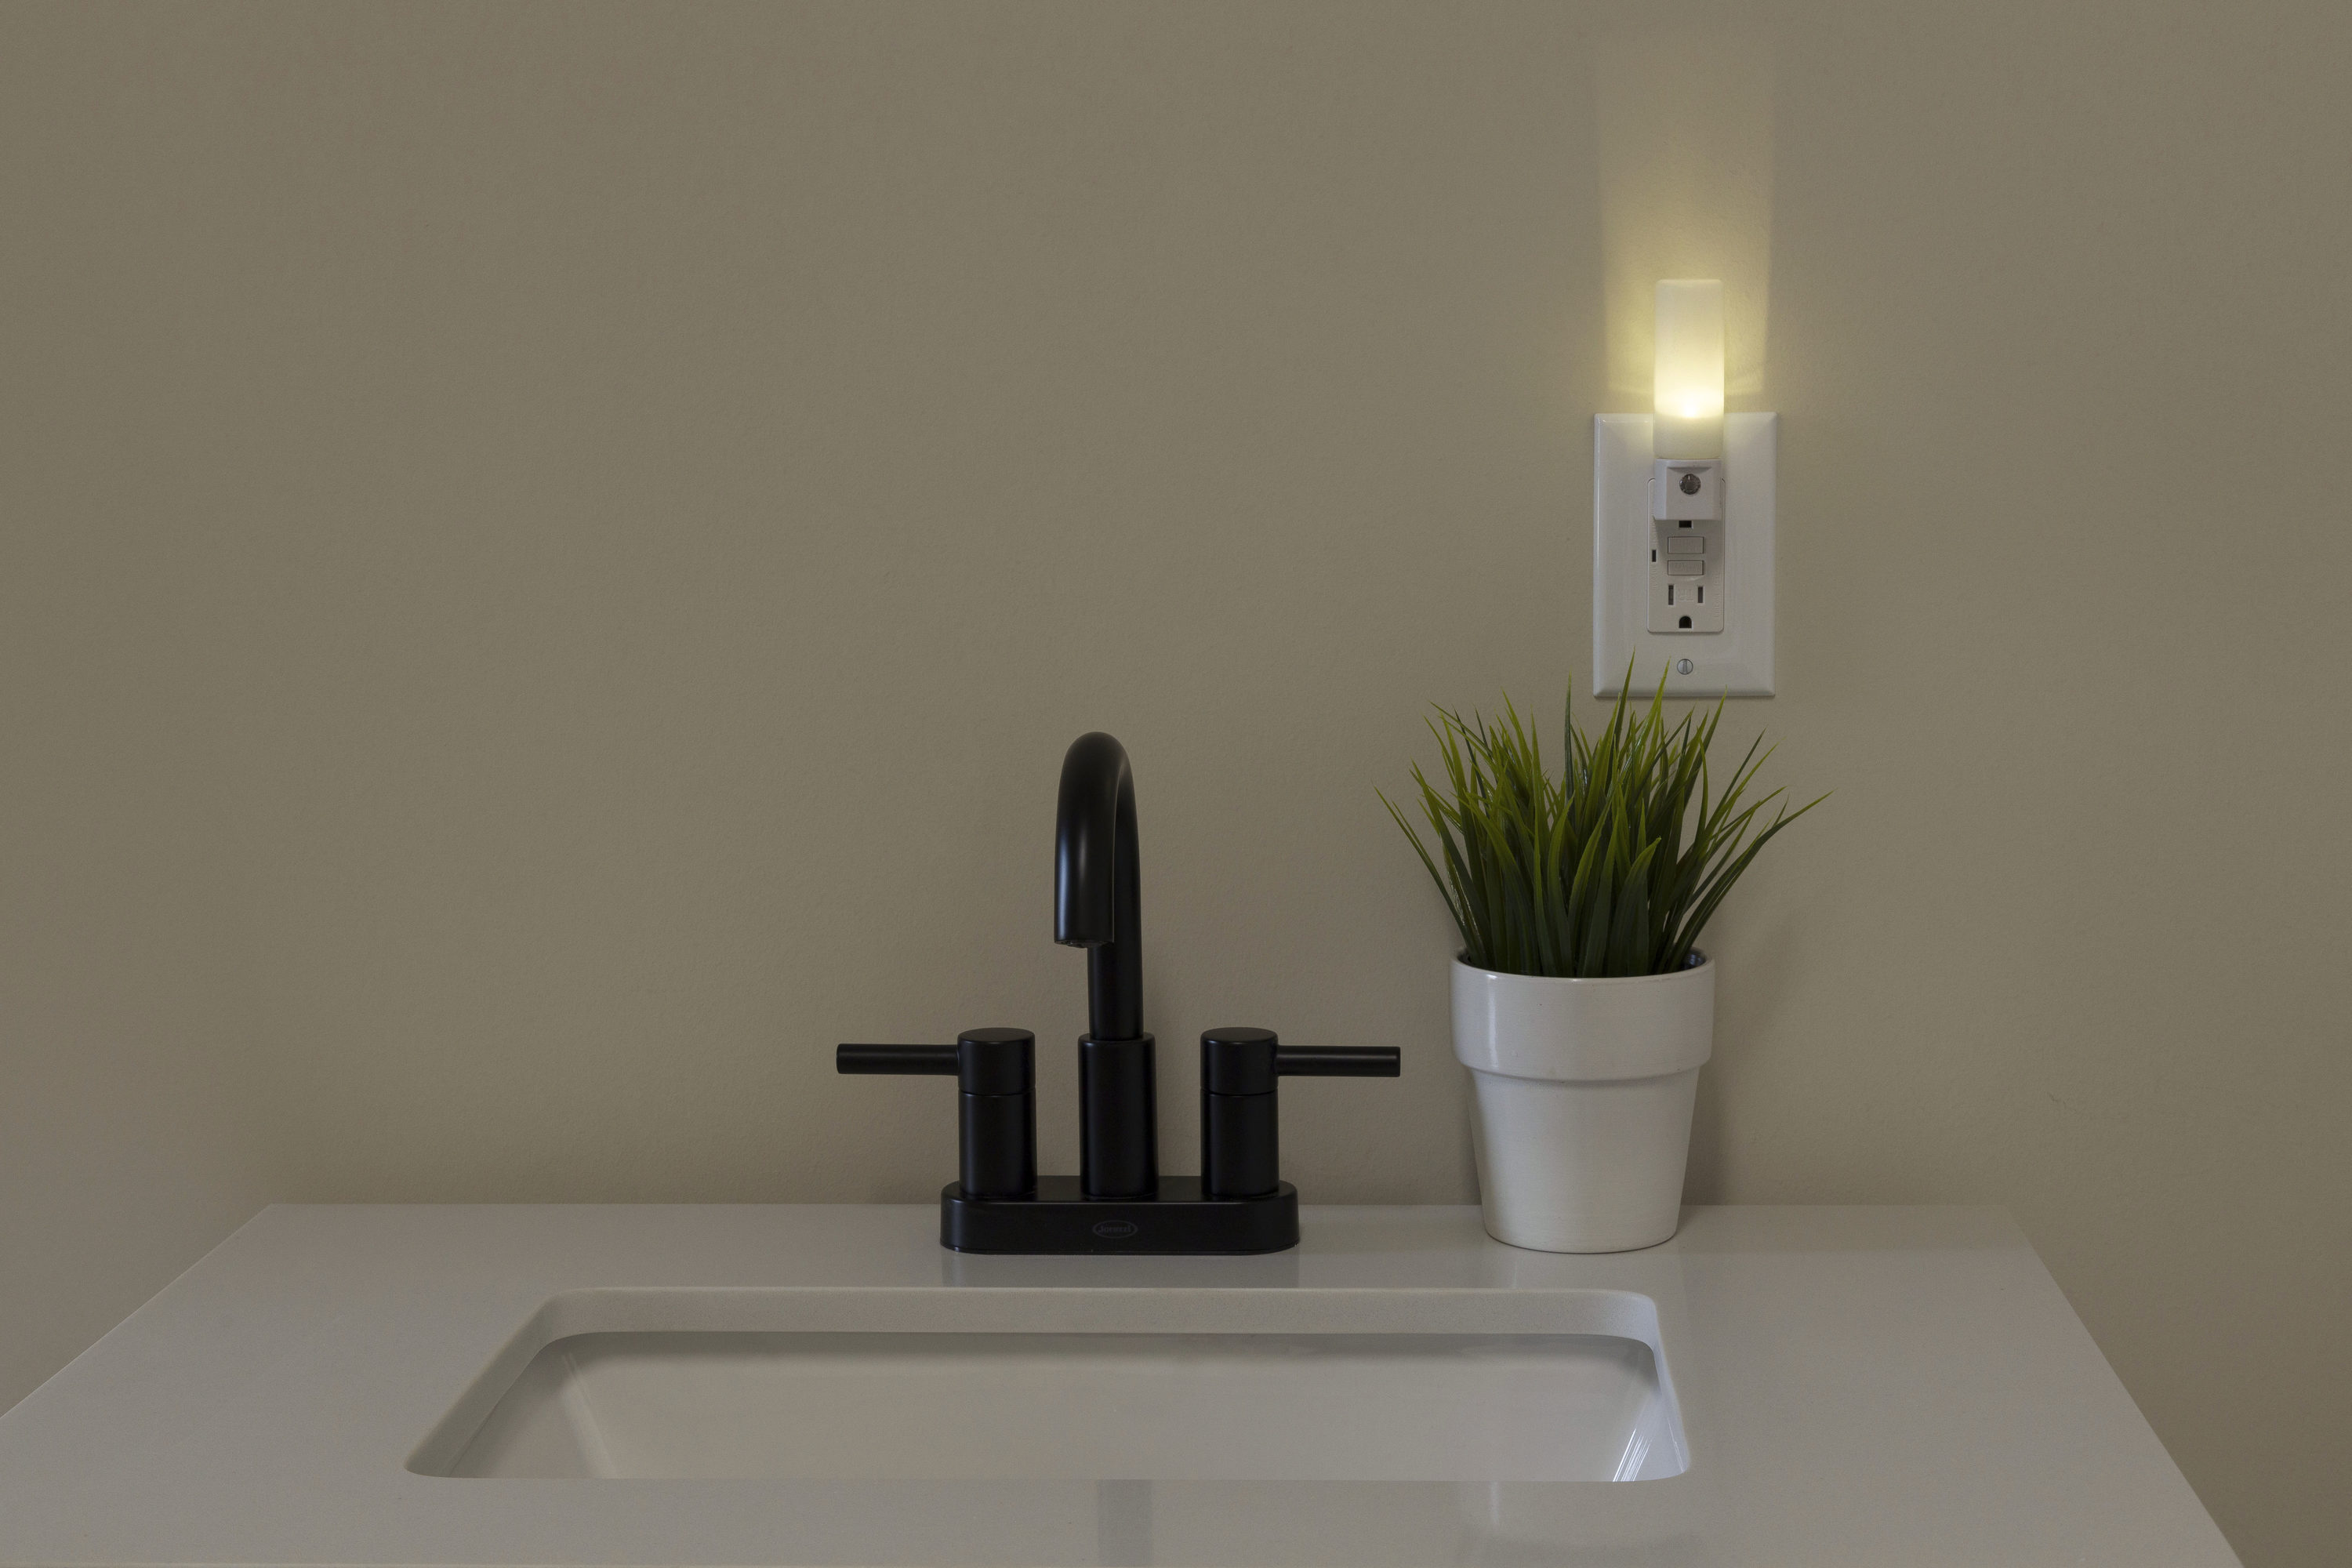 Ceramic Night Light with bath motif bathtub on/off switch with bulb 